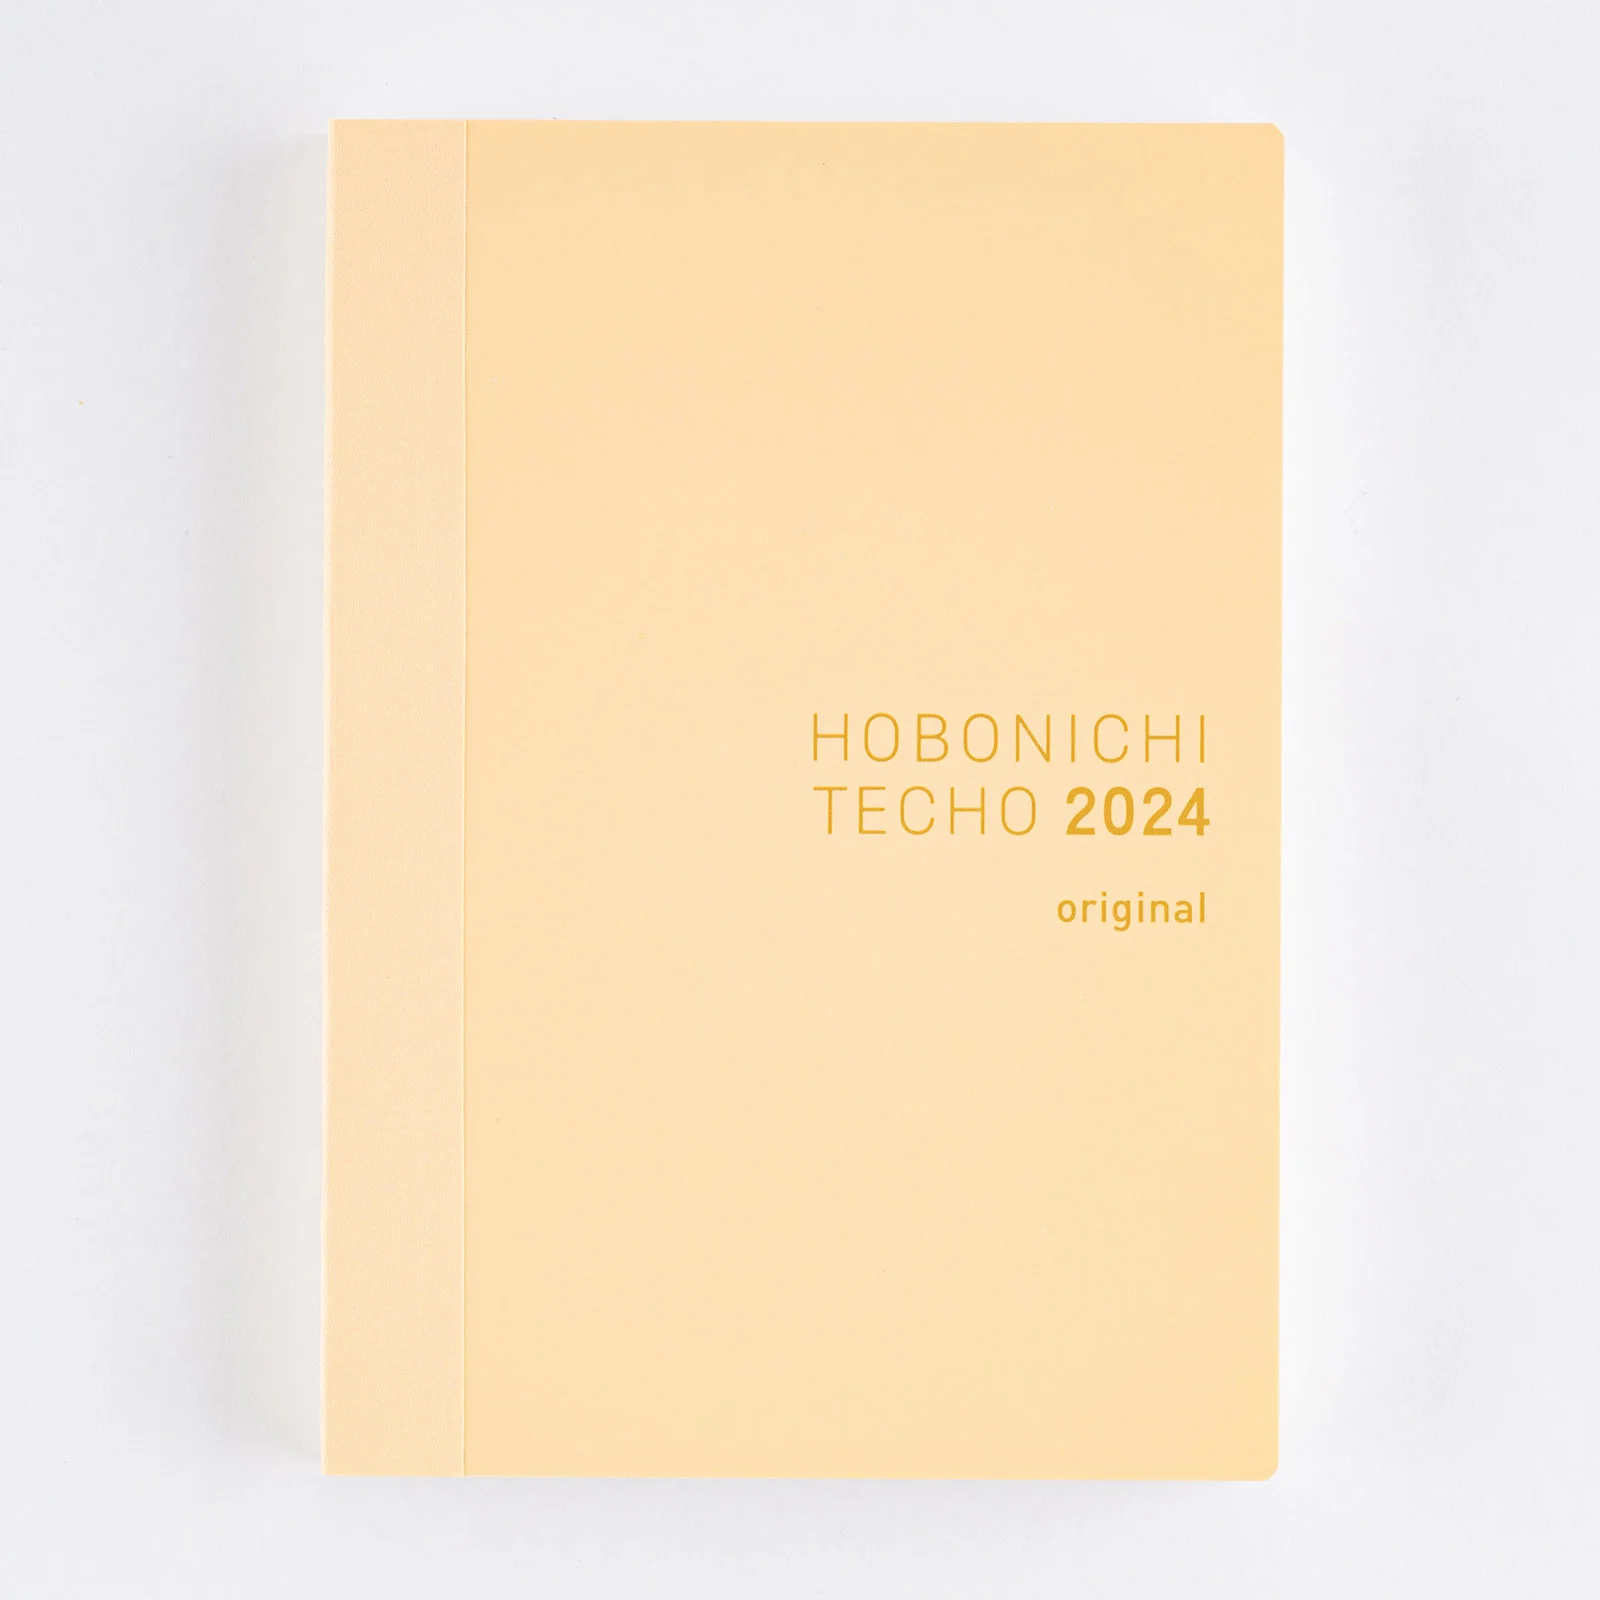 Hobonichi Techo Planner Book 2024 Agenda A6 Giornaliera